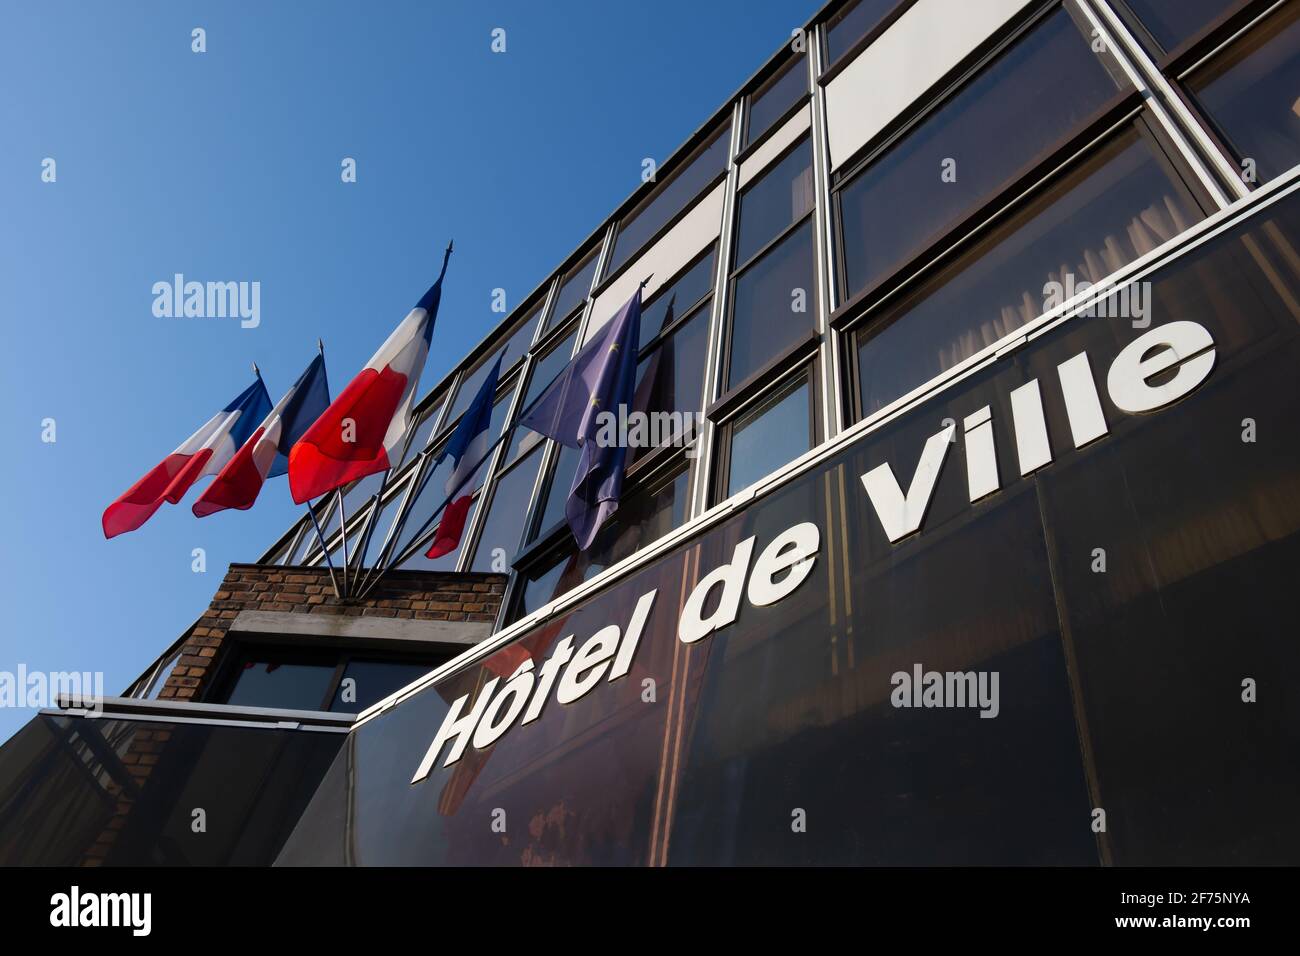 Außenansicht eines französischen Rathauses mit Fahnen und Das Wort „Hôtel de ville“ (bedeutet „Rathaus“) An der Fassade in französischer Sprache geschrieben Stockfoto